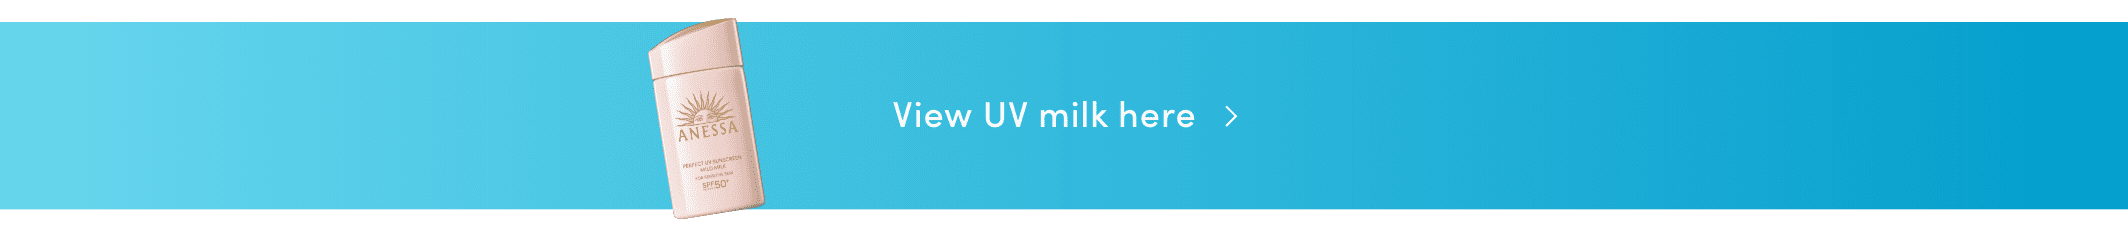 View UV milk here